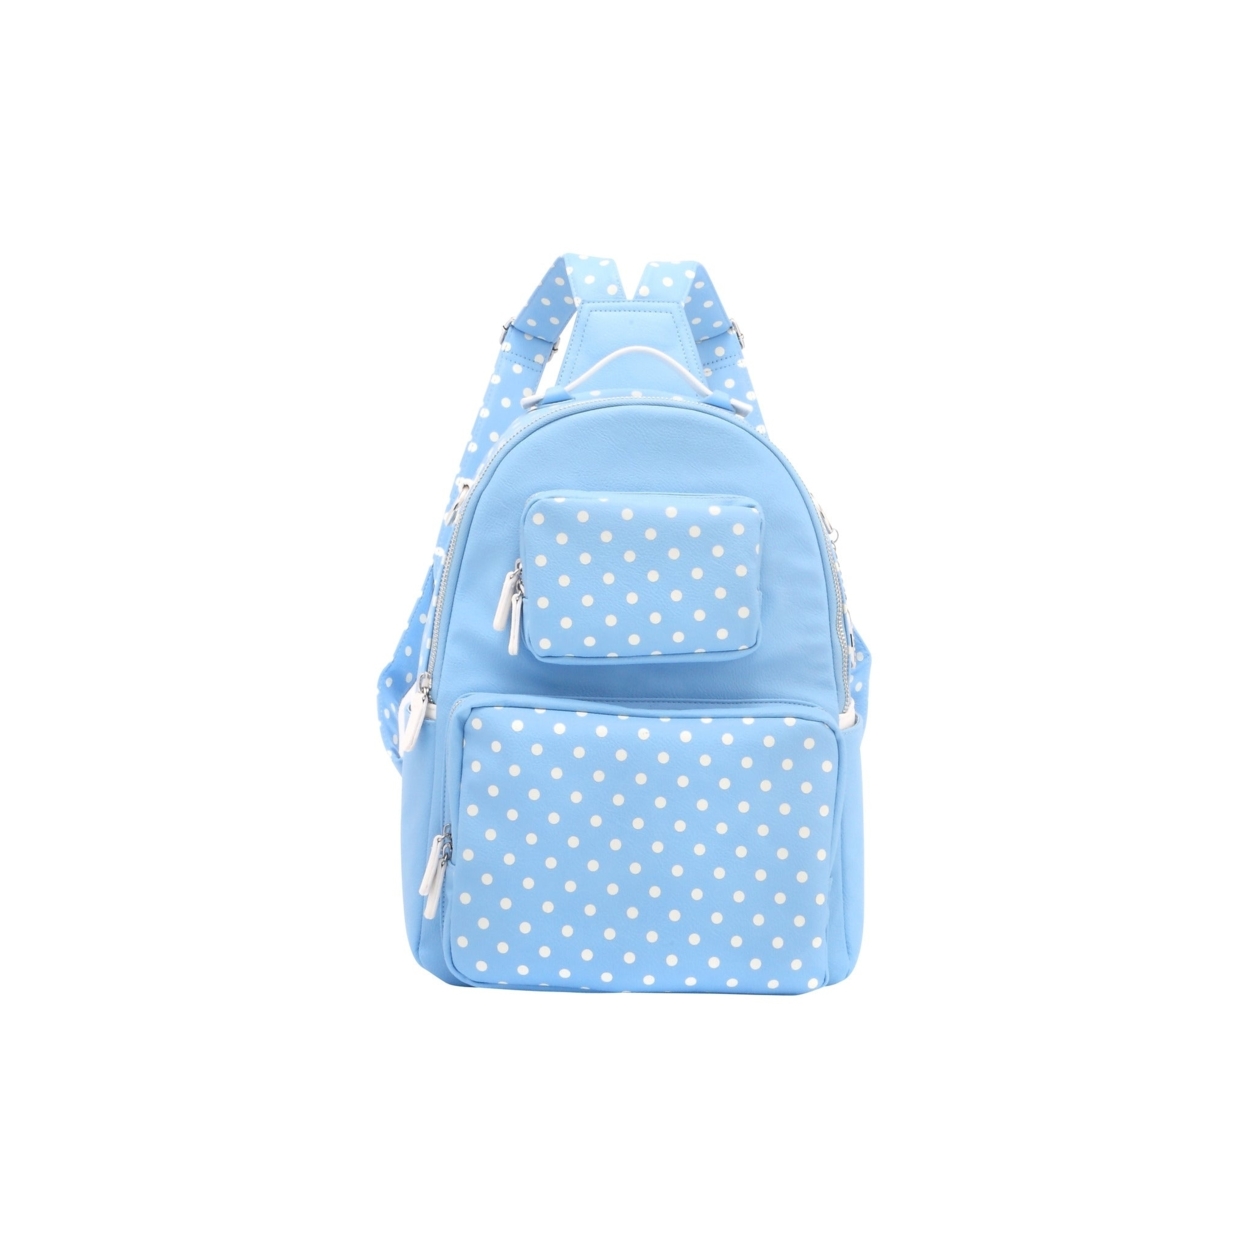 SCORE! Natalie Michelle Large Polka Dot Designer Backpack - Light Blue And White